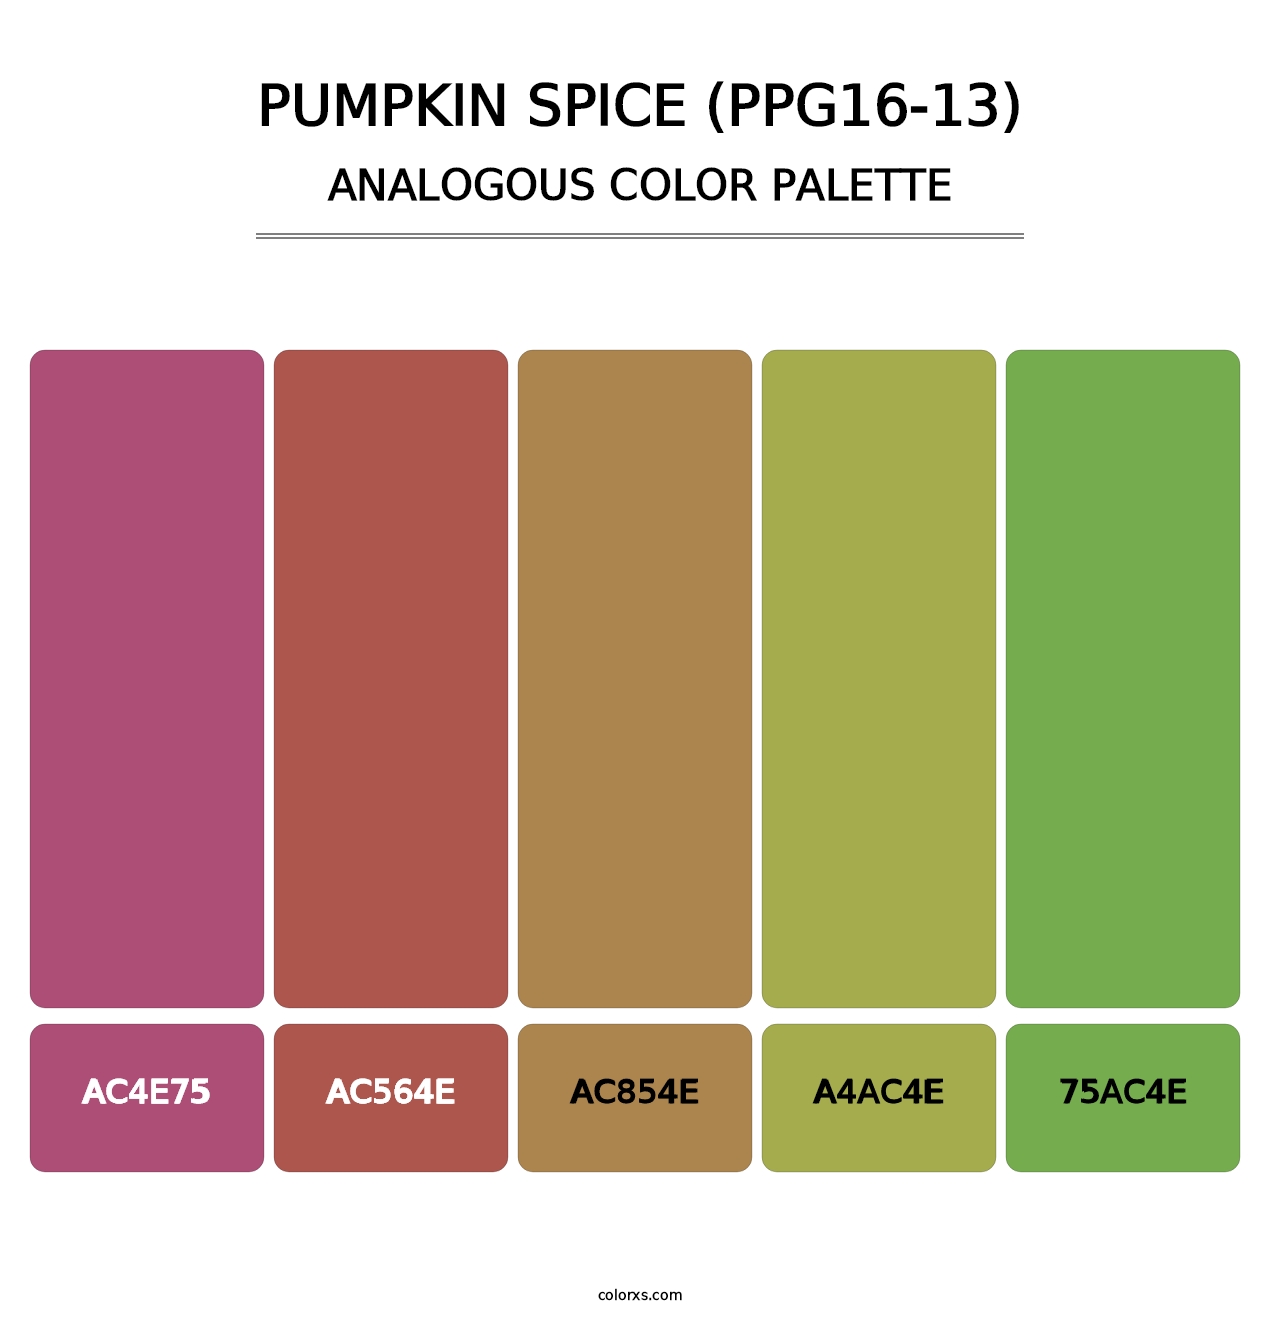 Pumpkin Spice (PPG16-13) - Analogous Color Palette